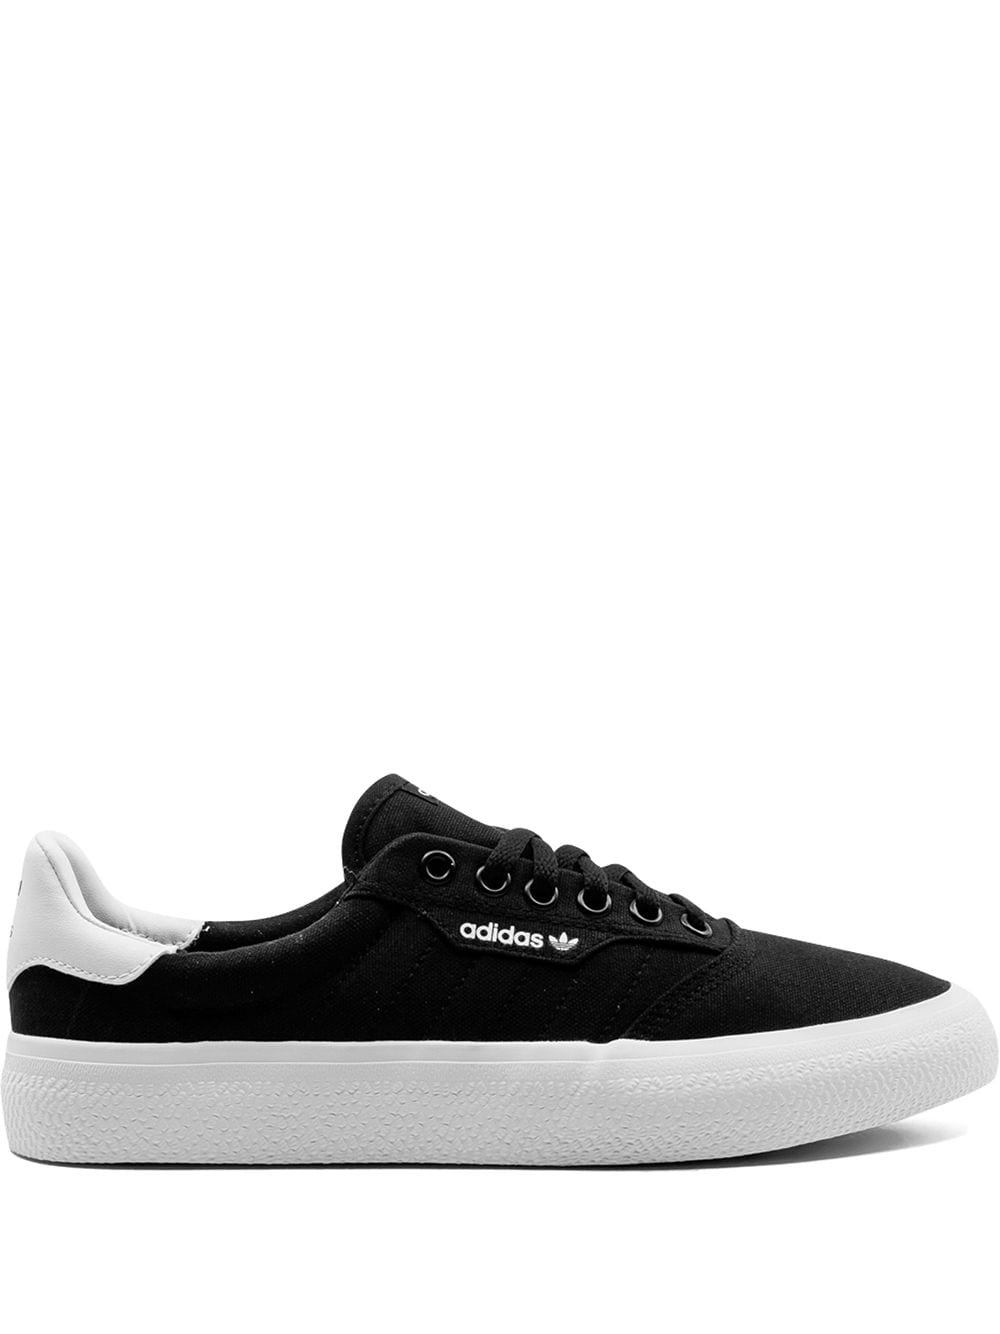 Adidas Originals 3mc Low-top Sneakers In Black